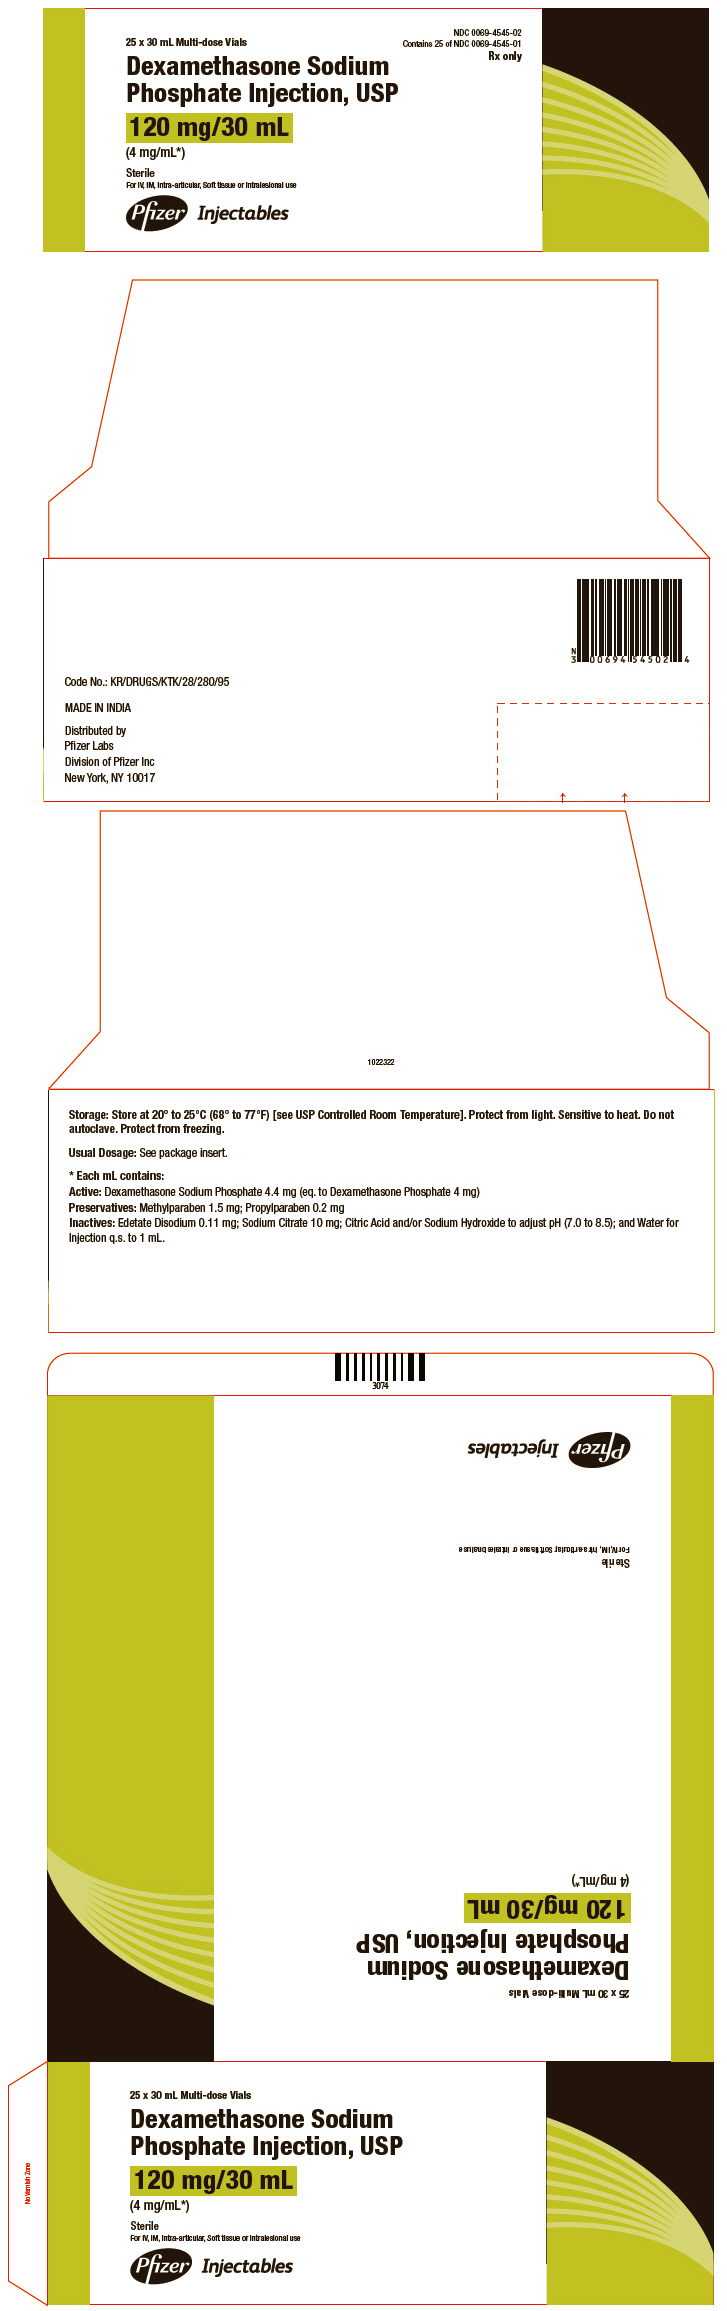 PRINCIPAL DISPLAY PANEL - 120 mg/30 mL Carton